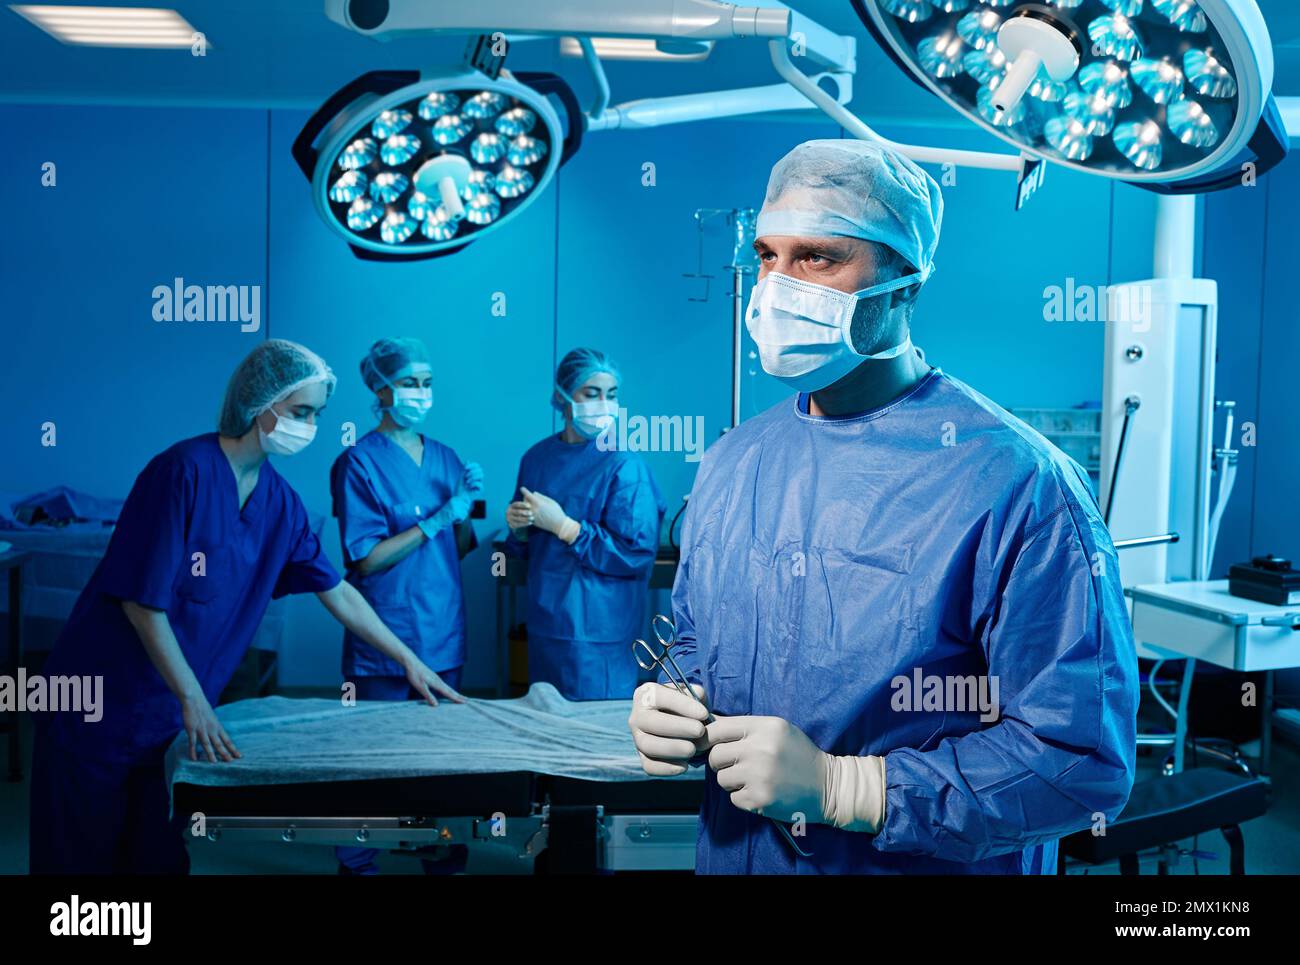 Portrait d'un chirurgien masculin en salle d'opération avec une équipe médicale. Service de chirurgie Banque D'Images